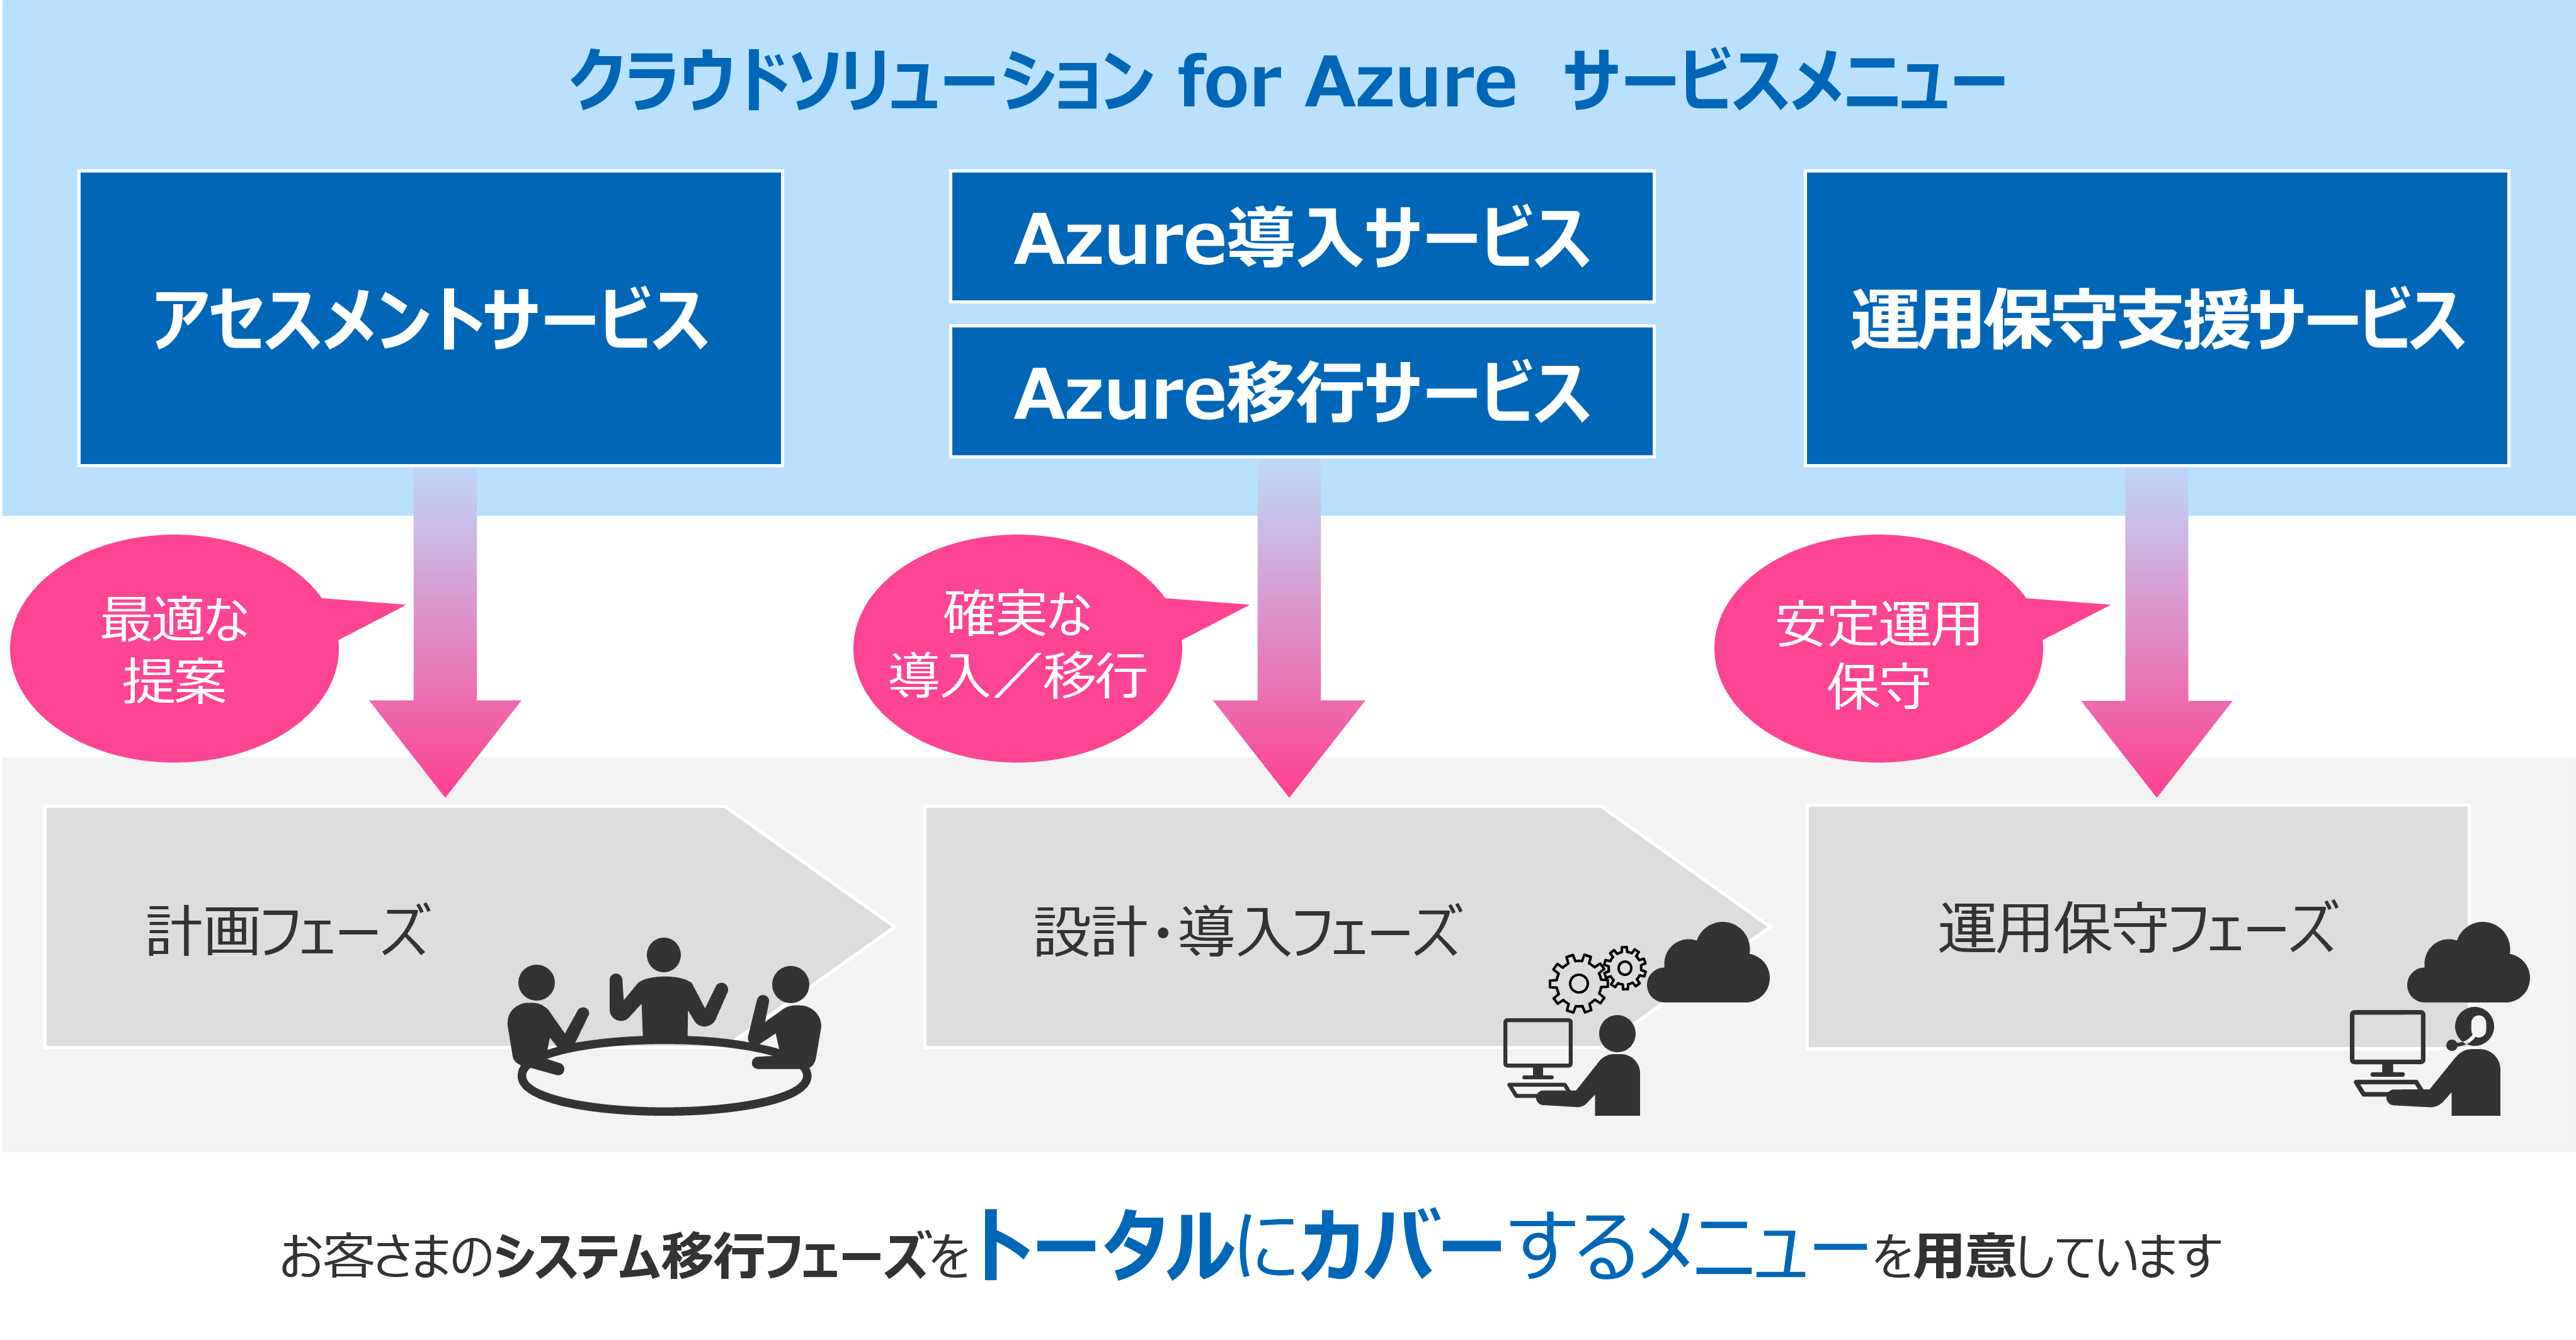 『クラウドソリューション for Azure』のサービスメニュー一覧